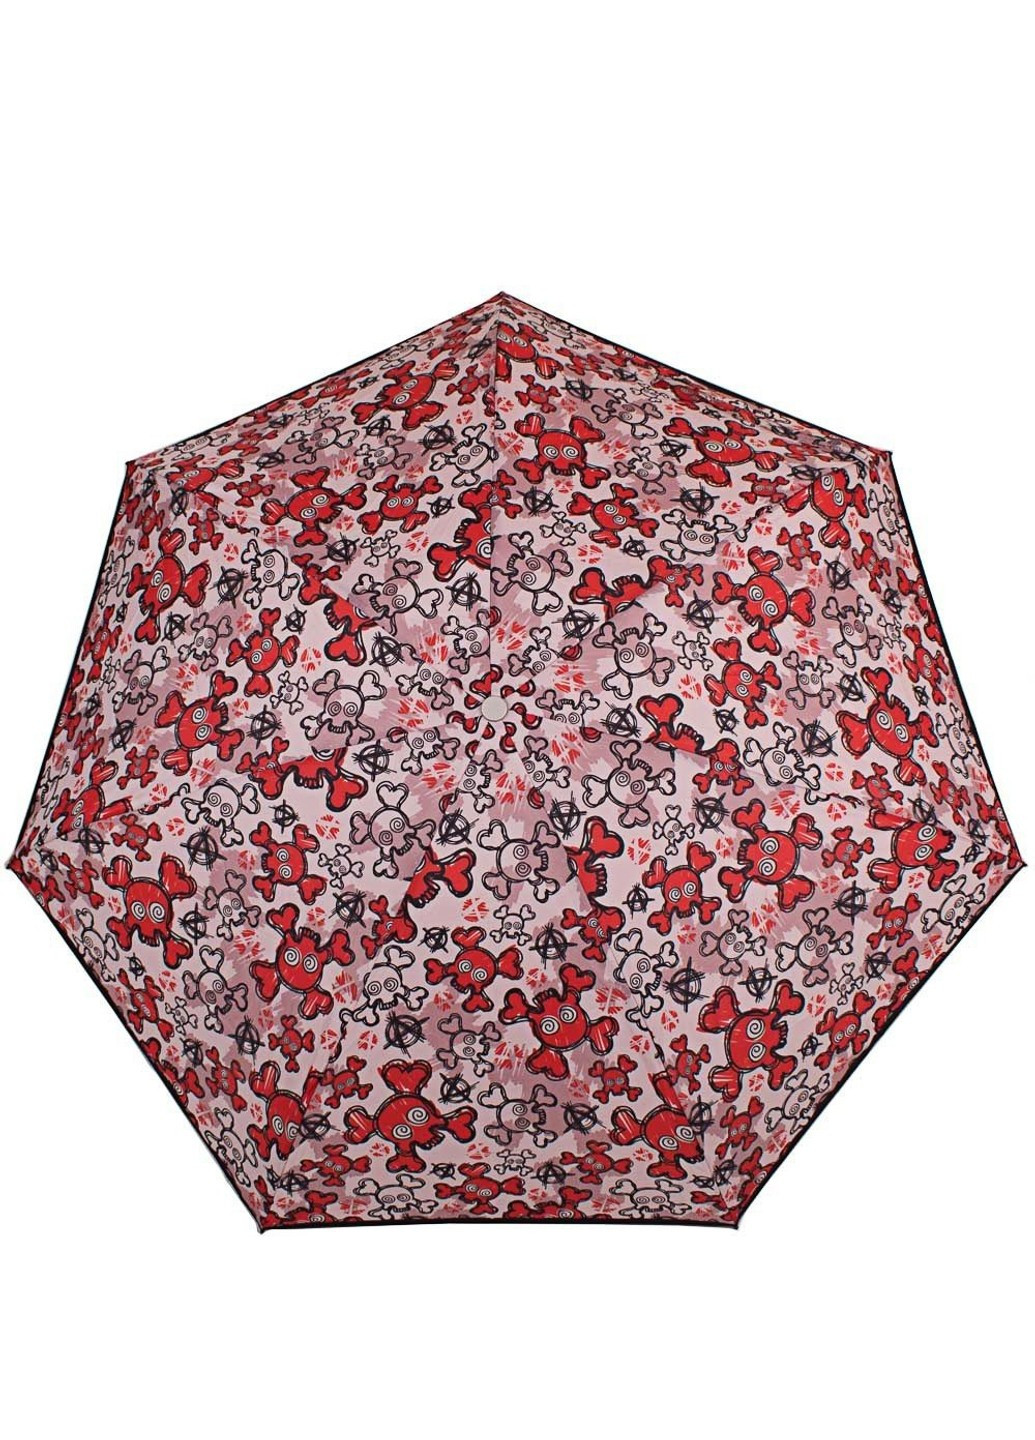 Женский контрастный компактный зонт автомат NEX (262982759)